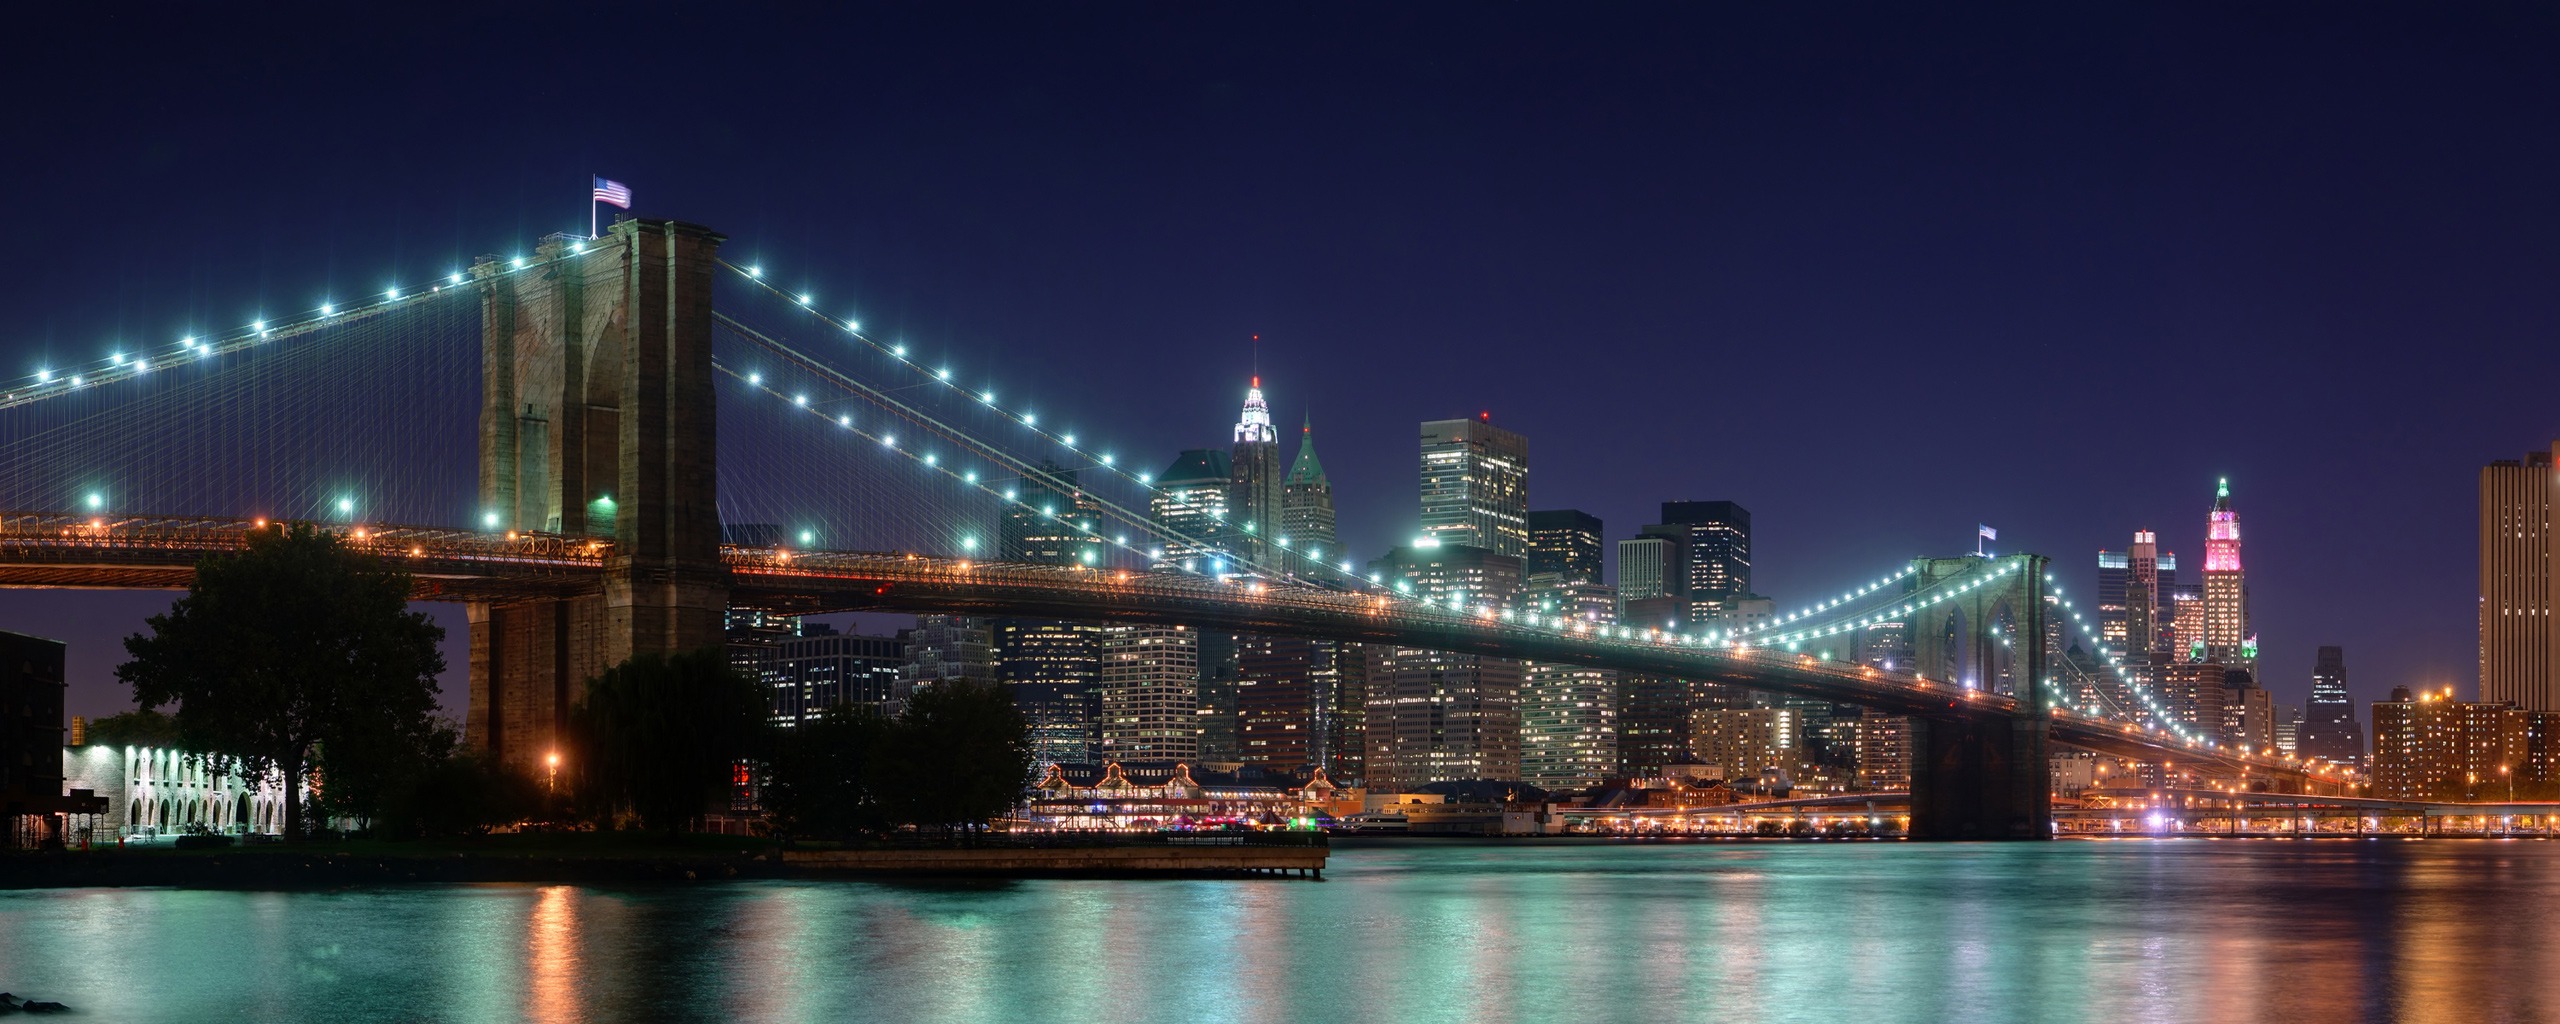 171814 скачать обои нью йорк, сделано человеком, бруклинский мост, манхэттен, мосты - заставки и картинки бесплатно